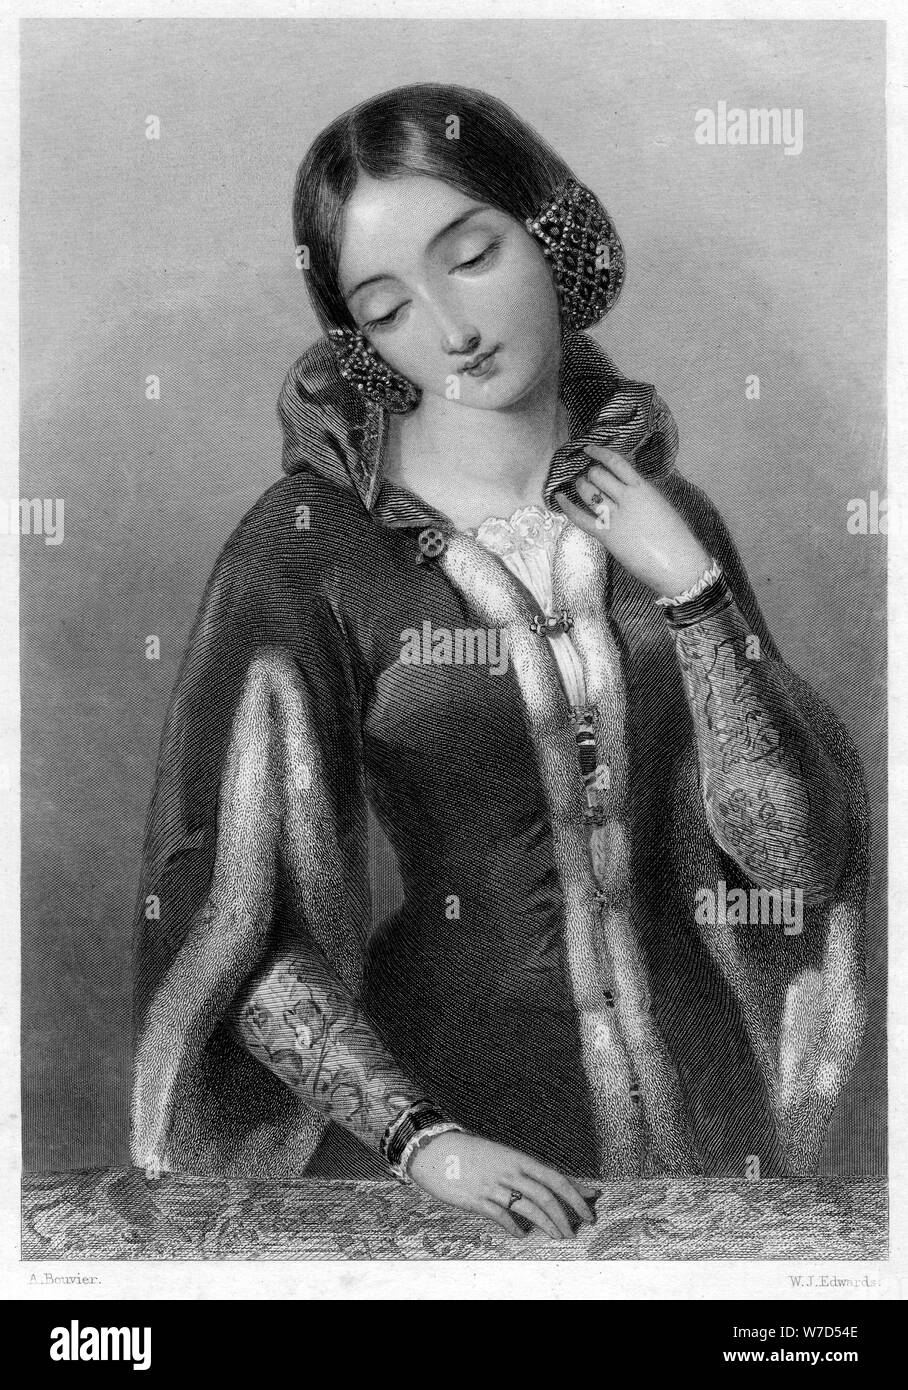 Anna di Boemia, regina consorte di Richard II d'Inghilterra.Artista: WJ Edwards Foto Stock